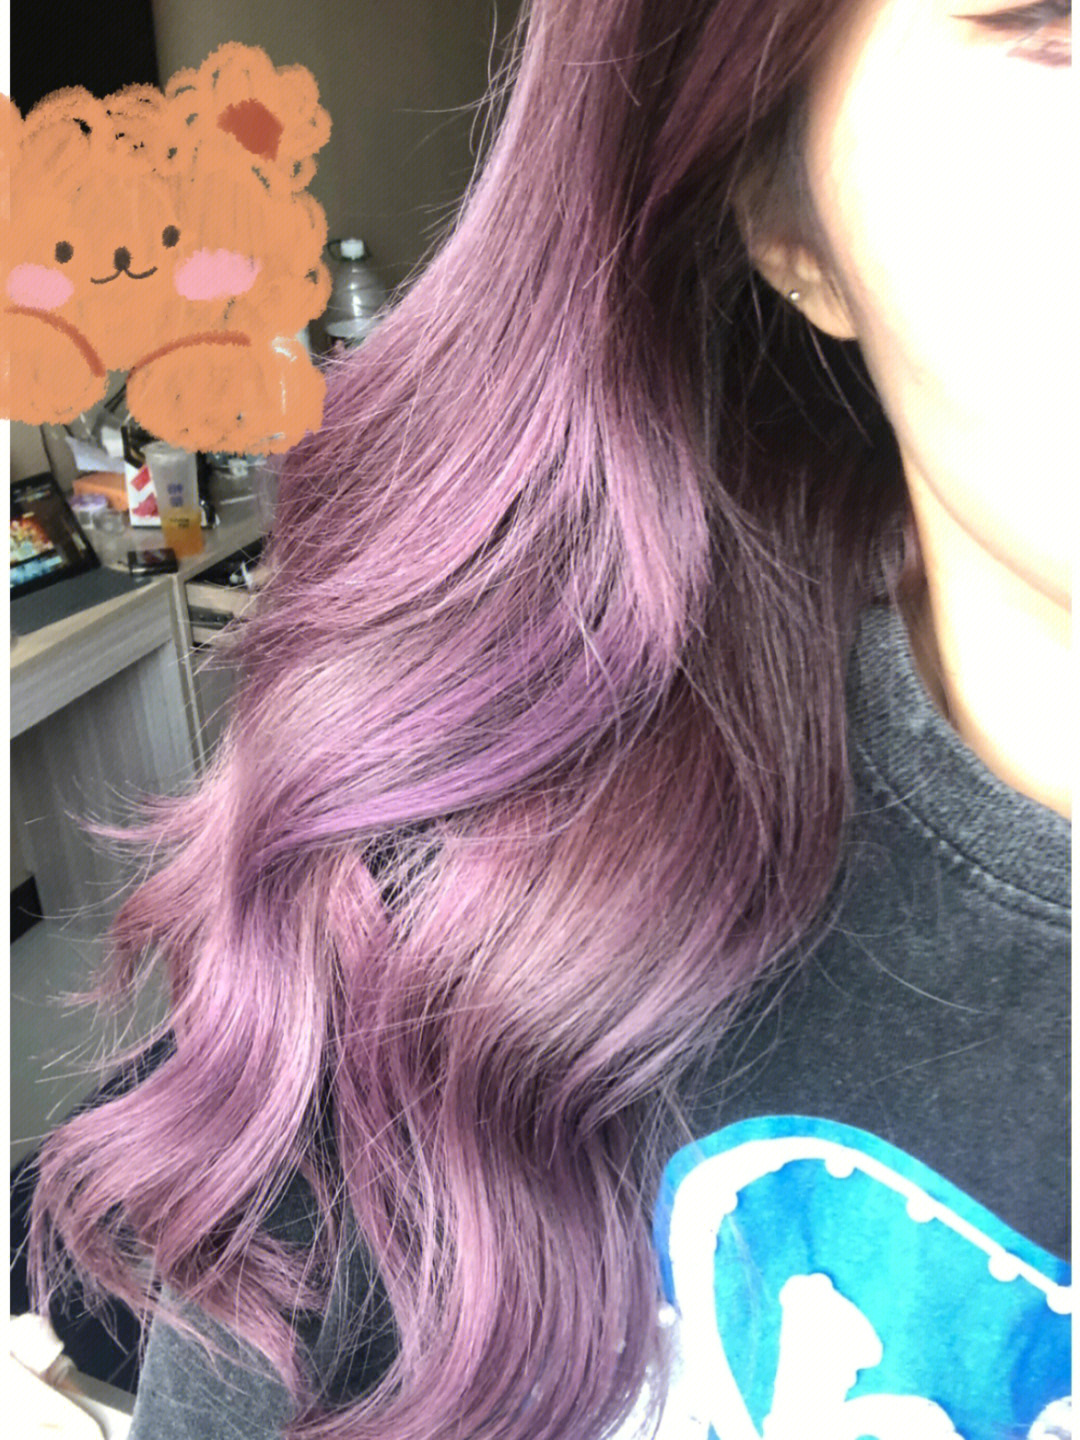 感觉又上了点紫色真的有用哈哈如果不想让头发掉色那么快的姐妹快去买